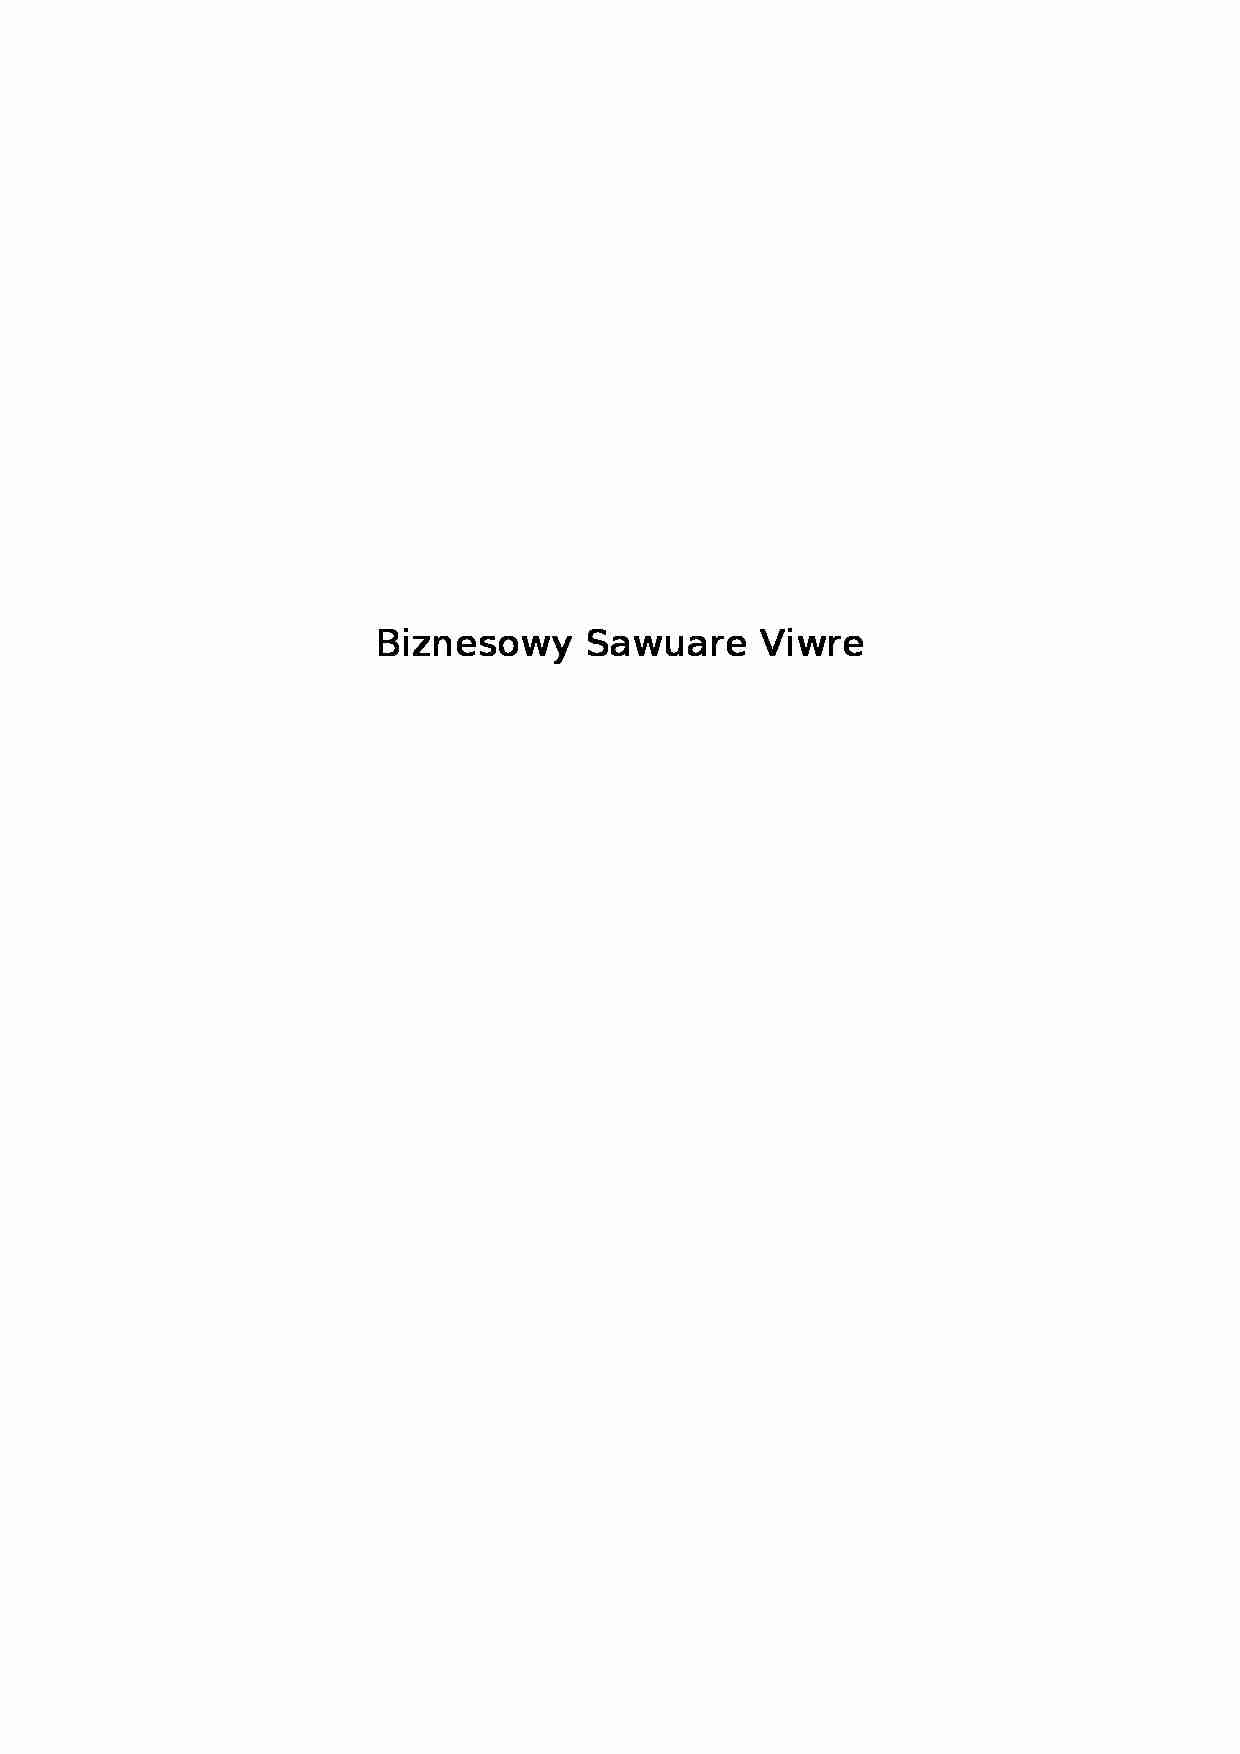 Biznesowy Sawuare Viwre - przykłady zachowania się - strona 1